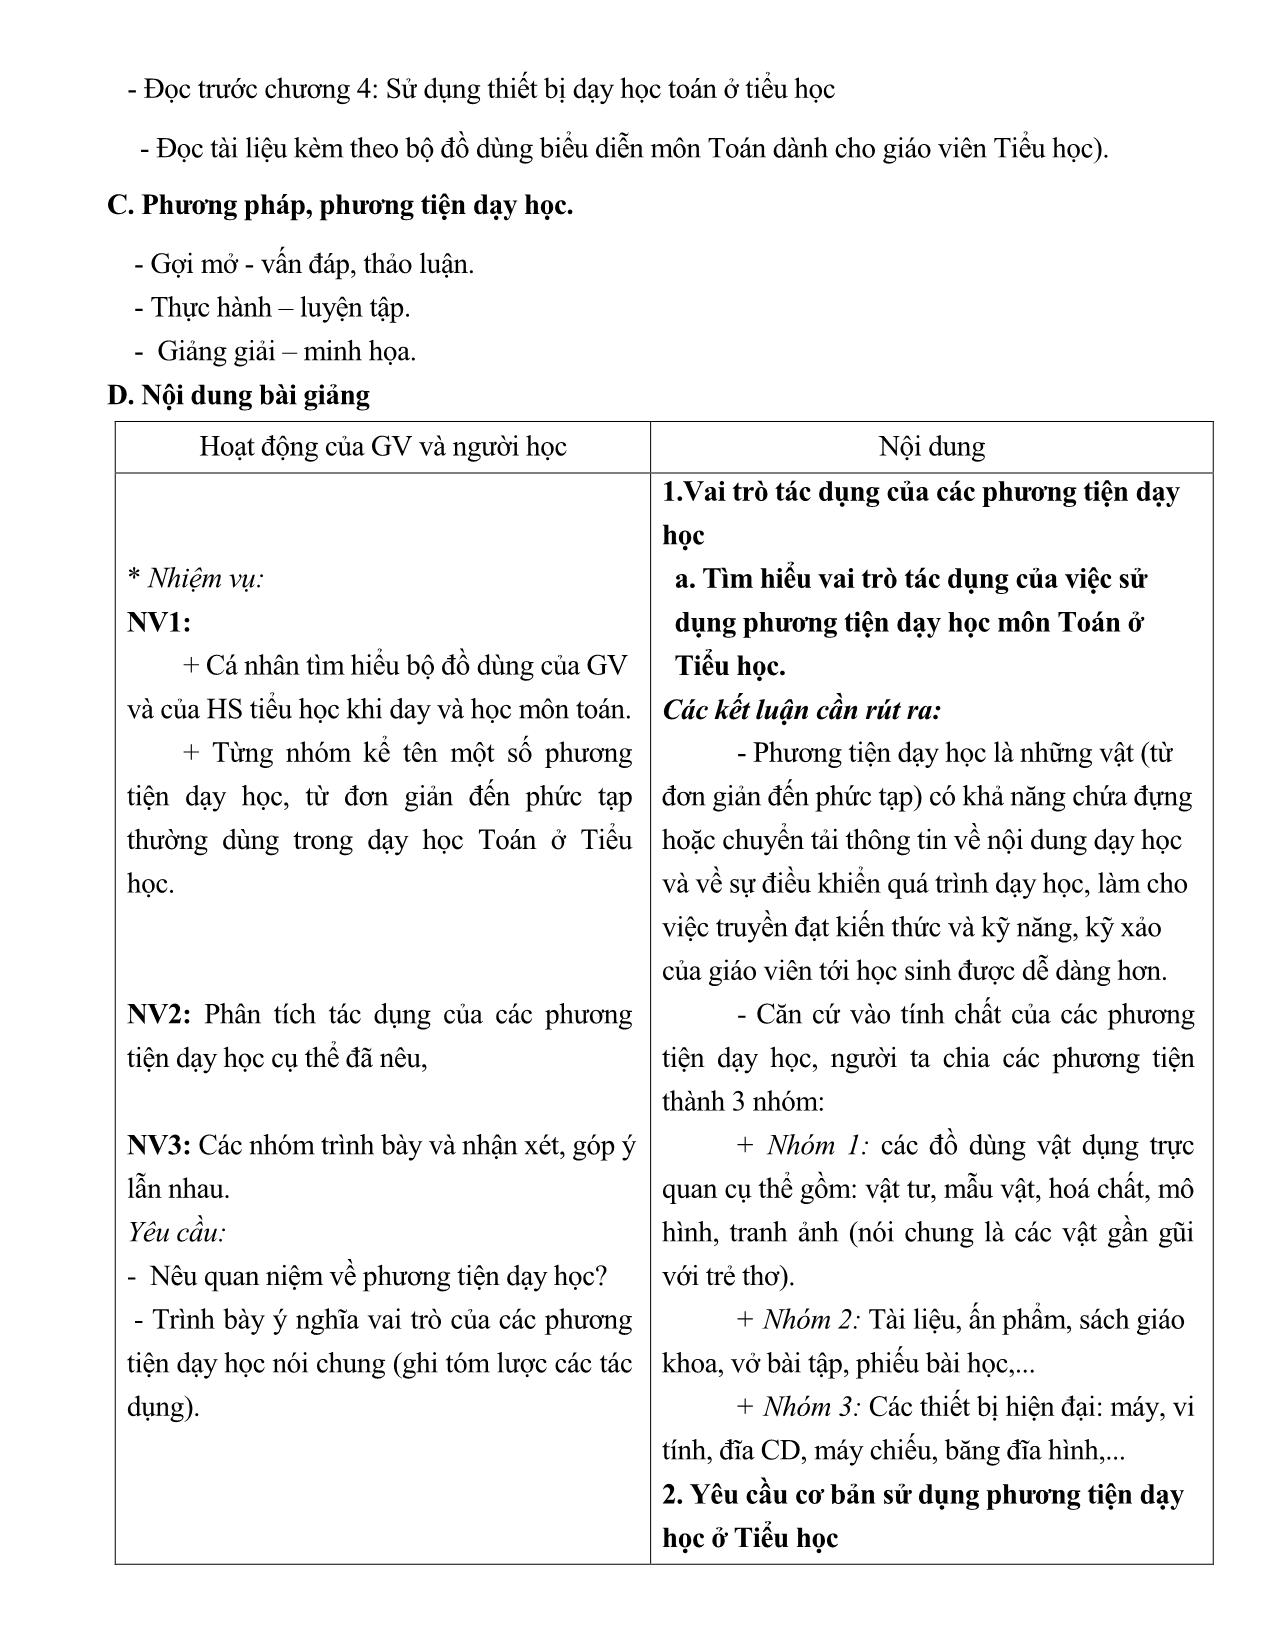 Toán tiểu học - Chương 4: Sử dụng thiết bị dạy học toán ở tiểu học trang 2